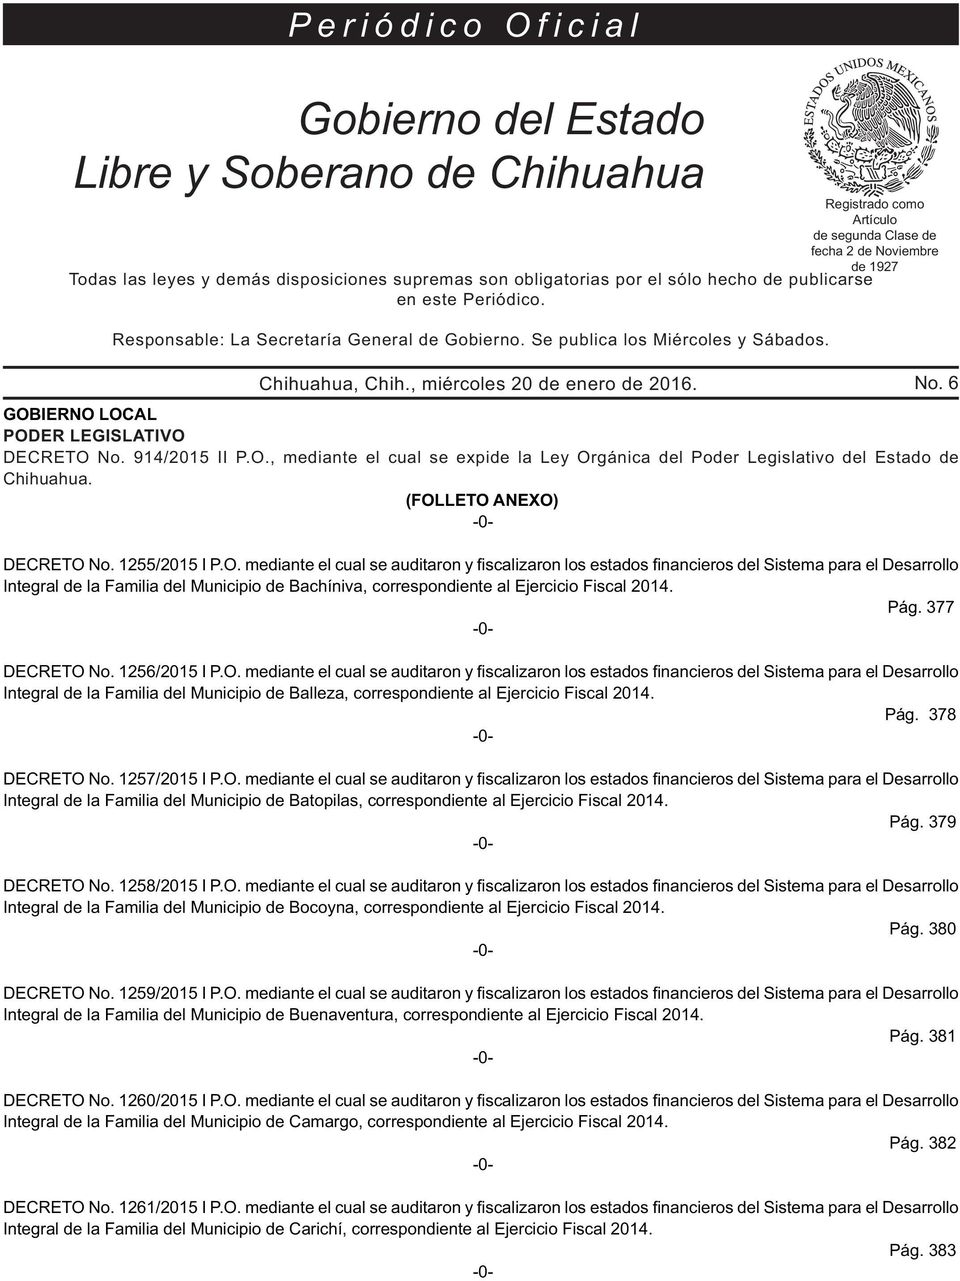 Registrado como Artículo de segunda Clase de fecha 2 de Noviembre GOBIERNO LOCAL PODER LEGISLATIVO DECRETO No. 914/2015 II P.O., mediante el cual se expide la Ley Orgánica del Poder Legislativo del Estado de Chihuahua.